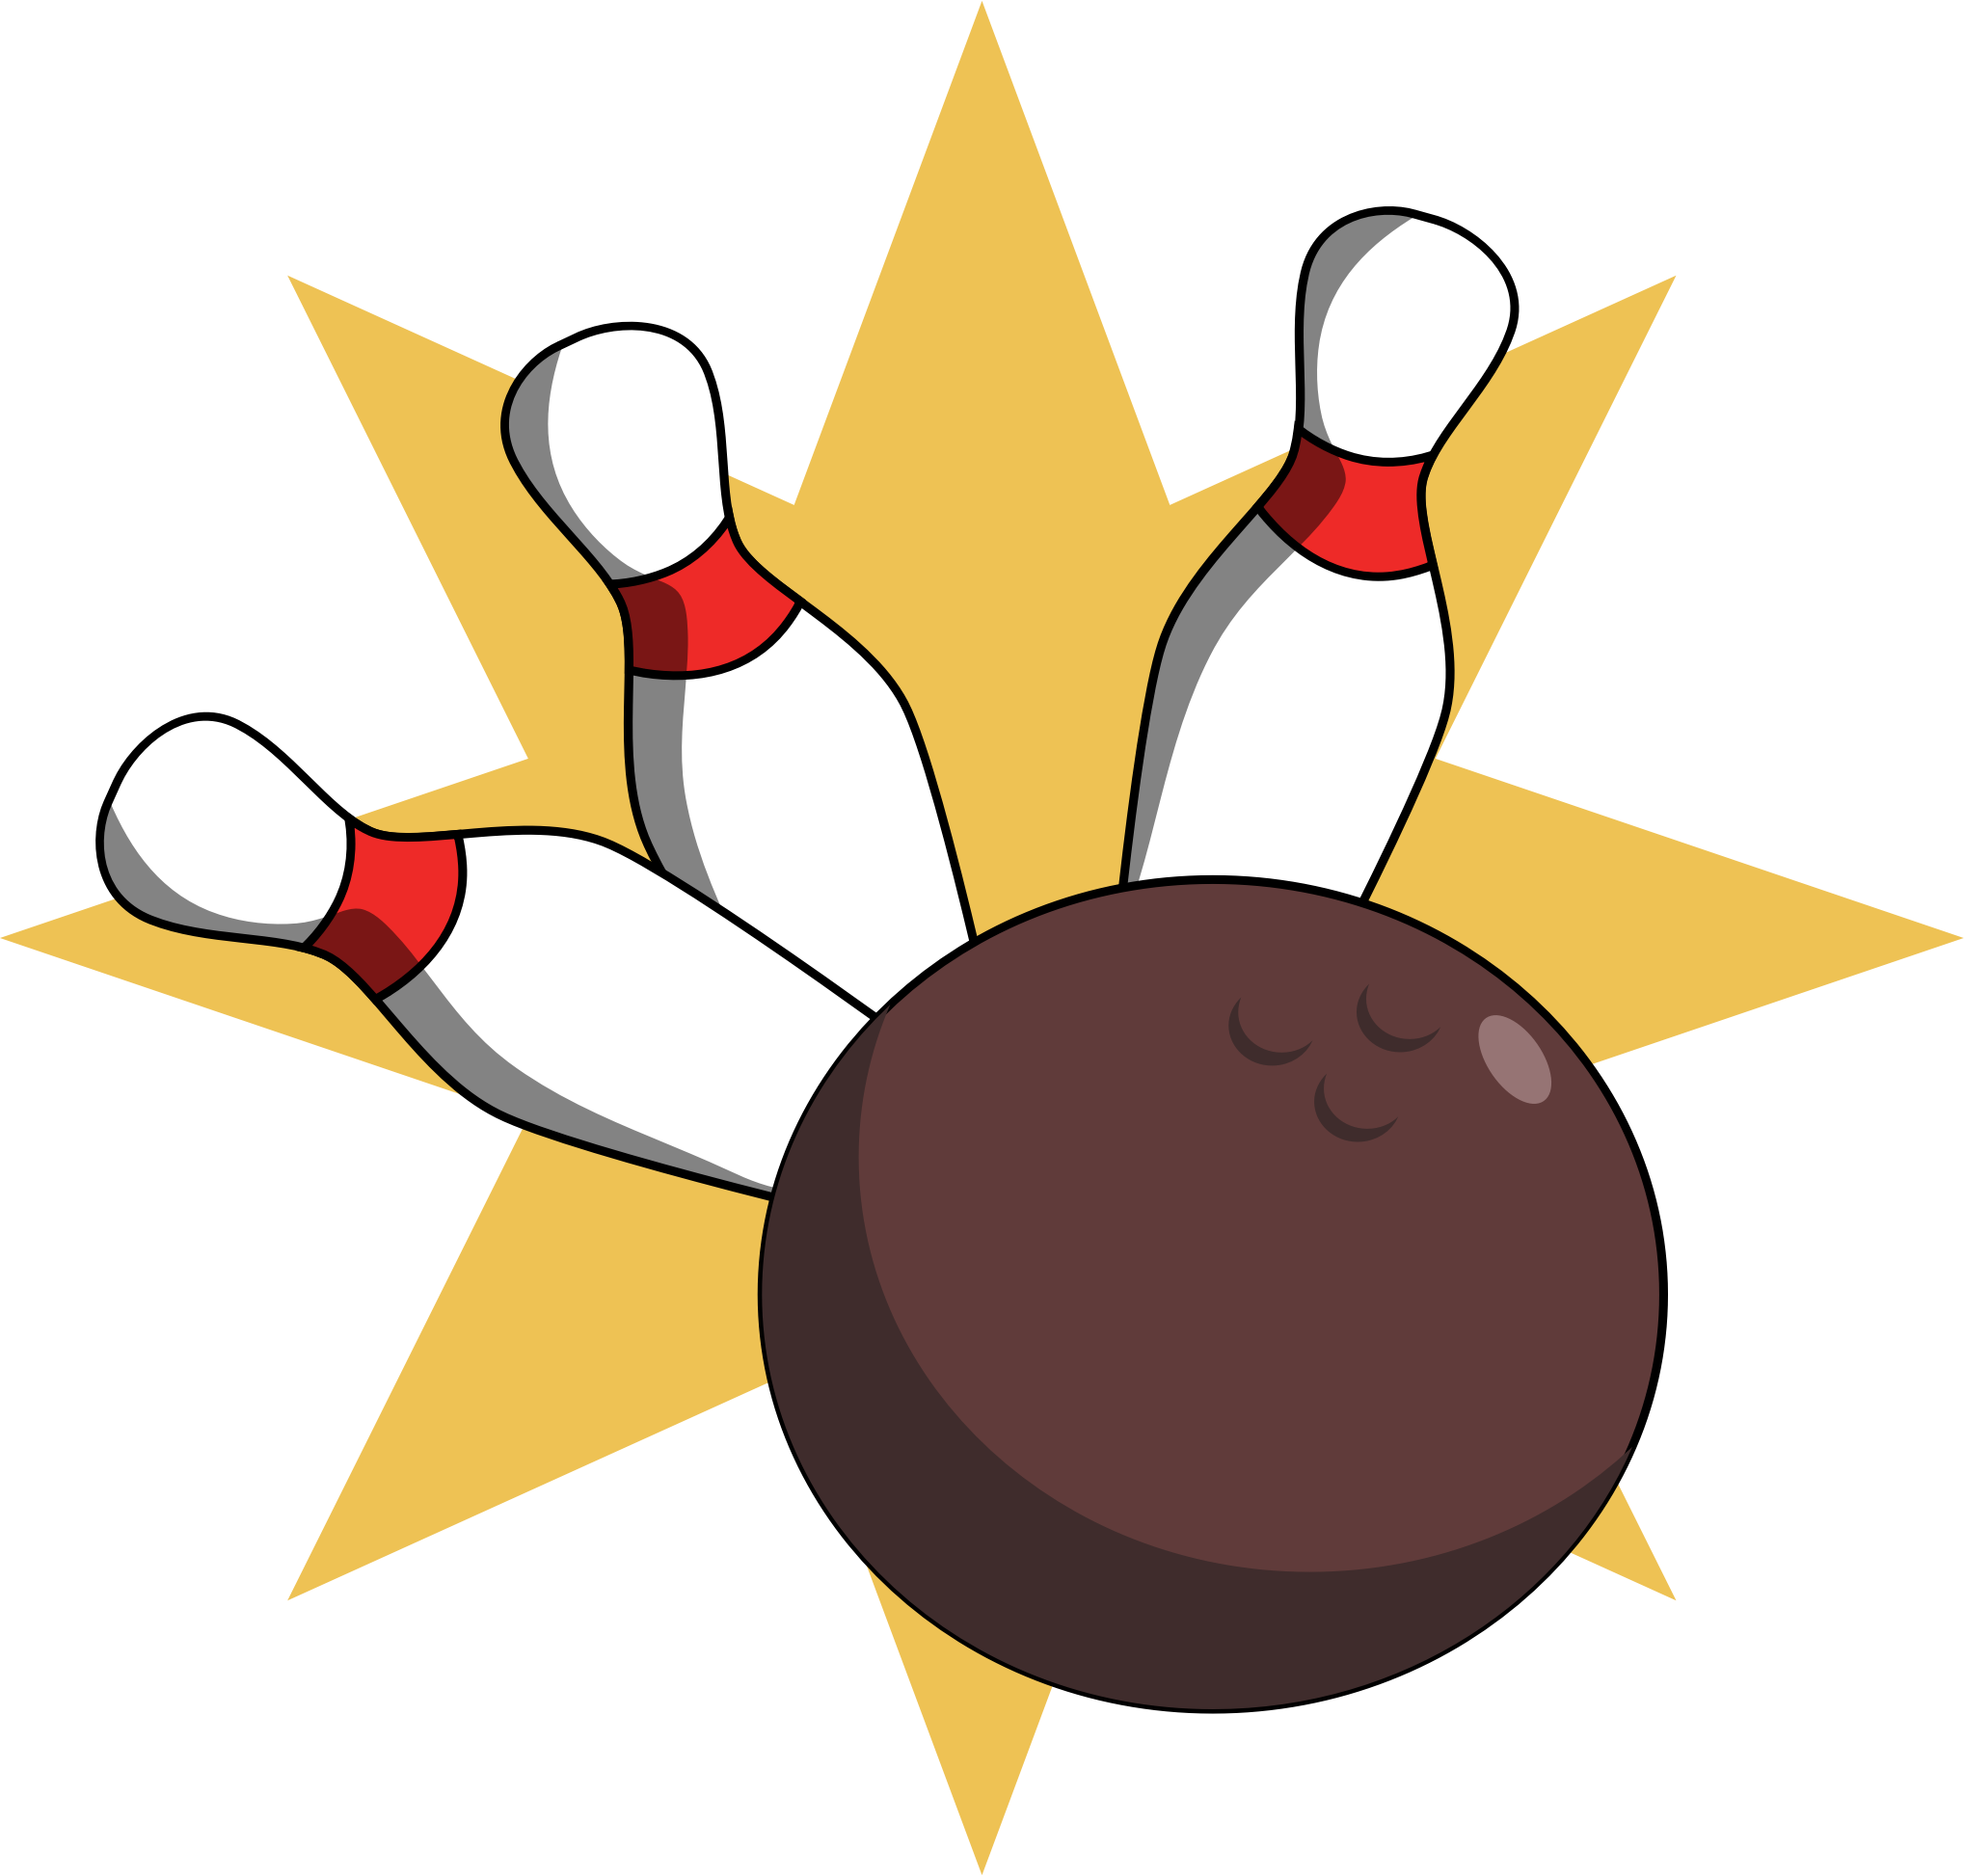 Bowling Ball hitting pins vector clipart image Free